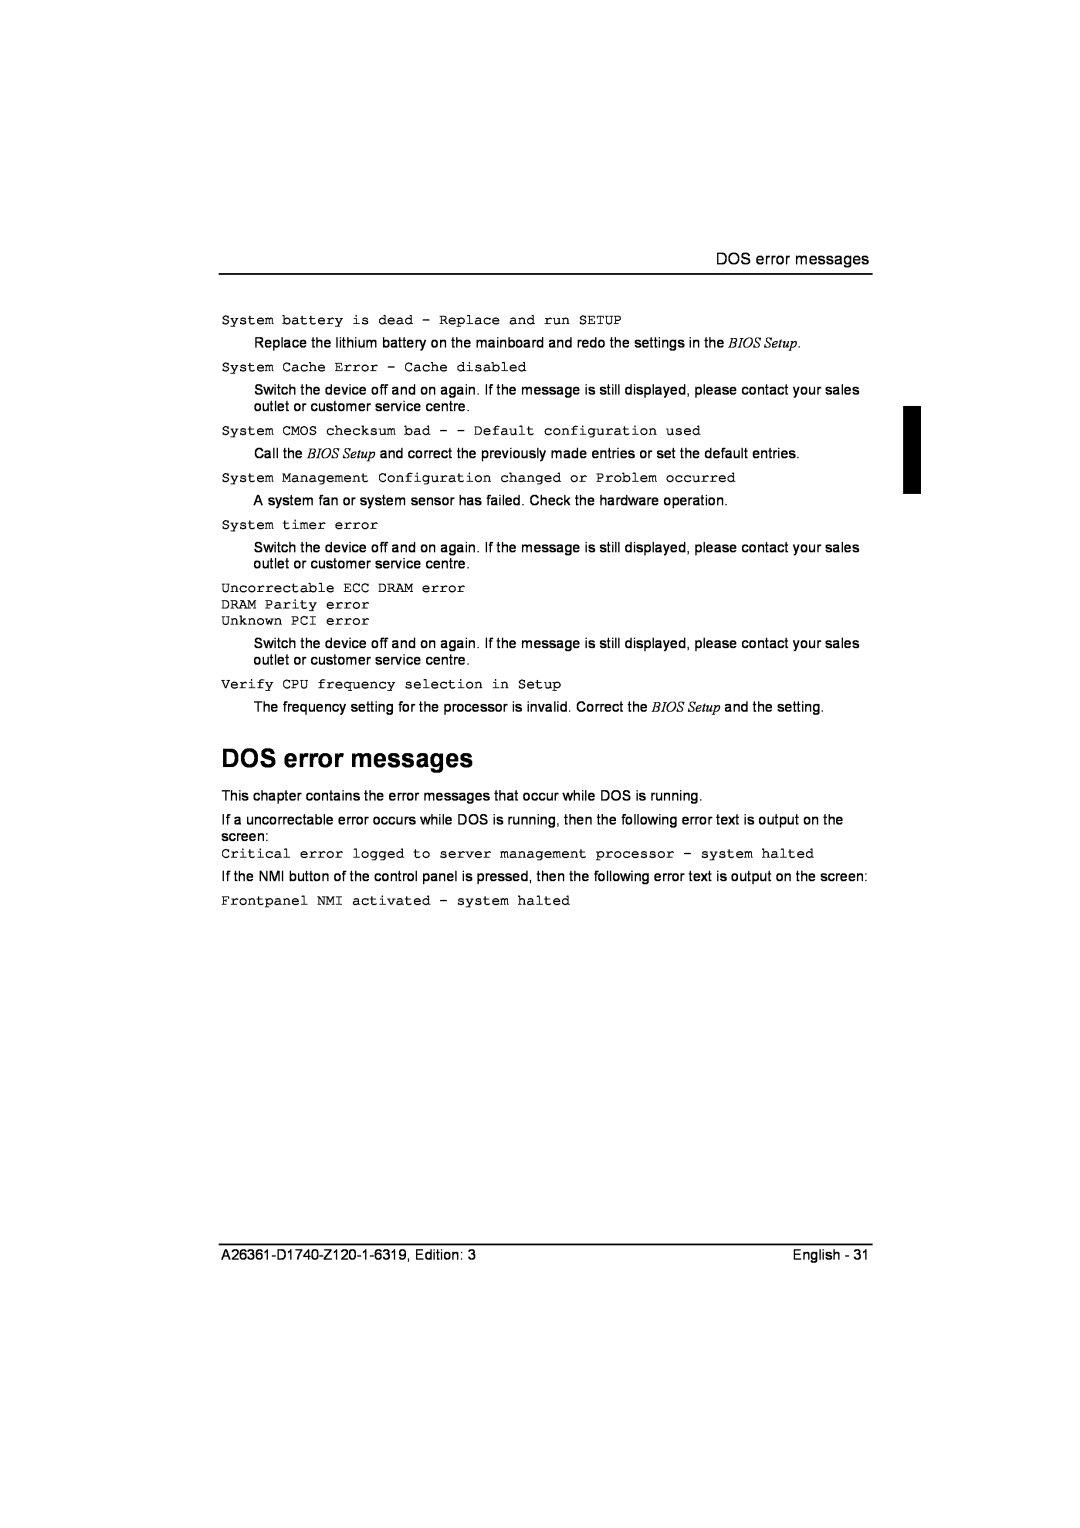 Fujitsu D1740 technical manual DOS error messages 